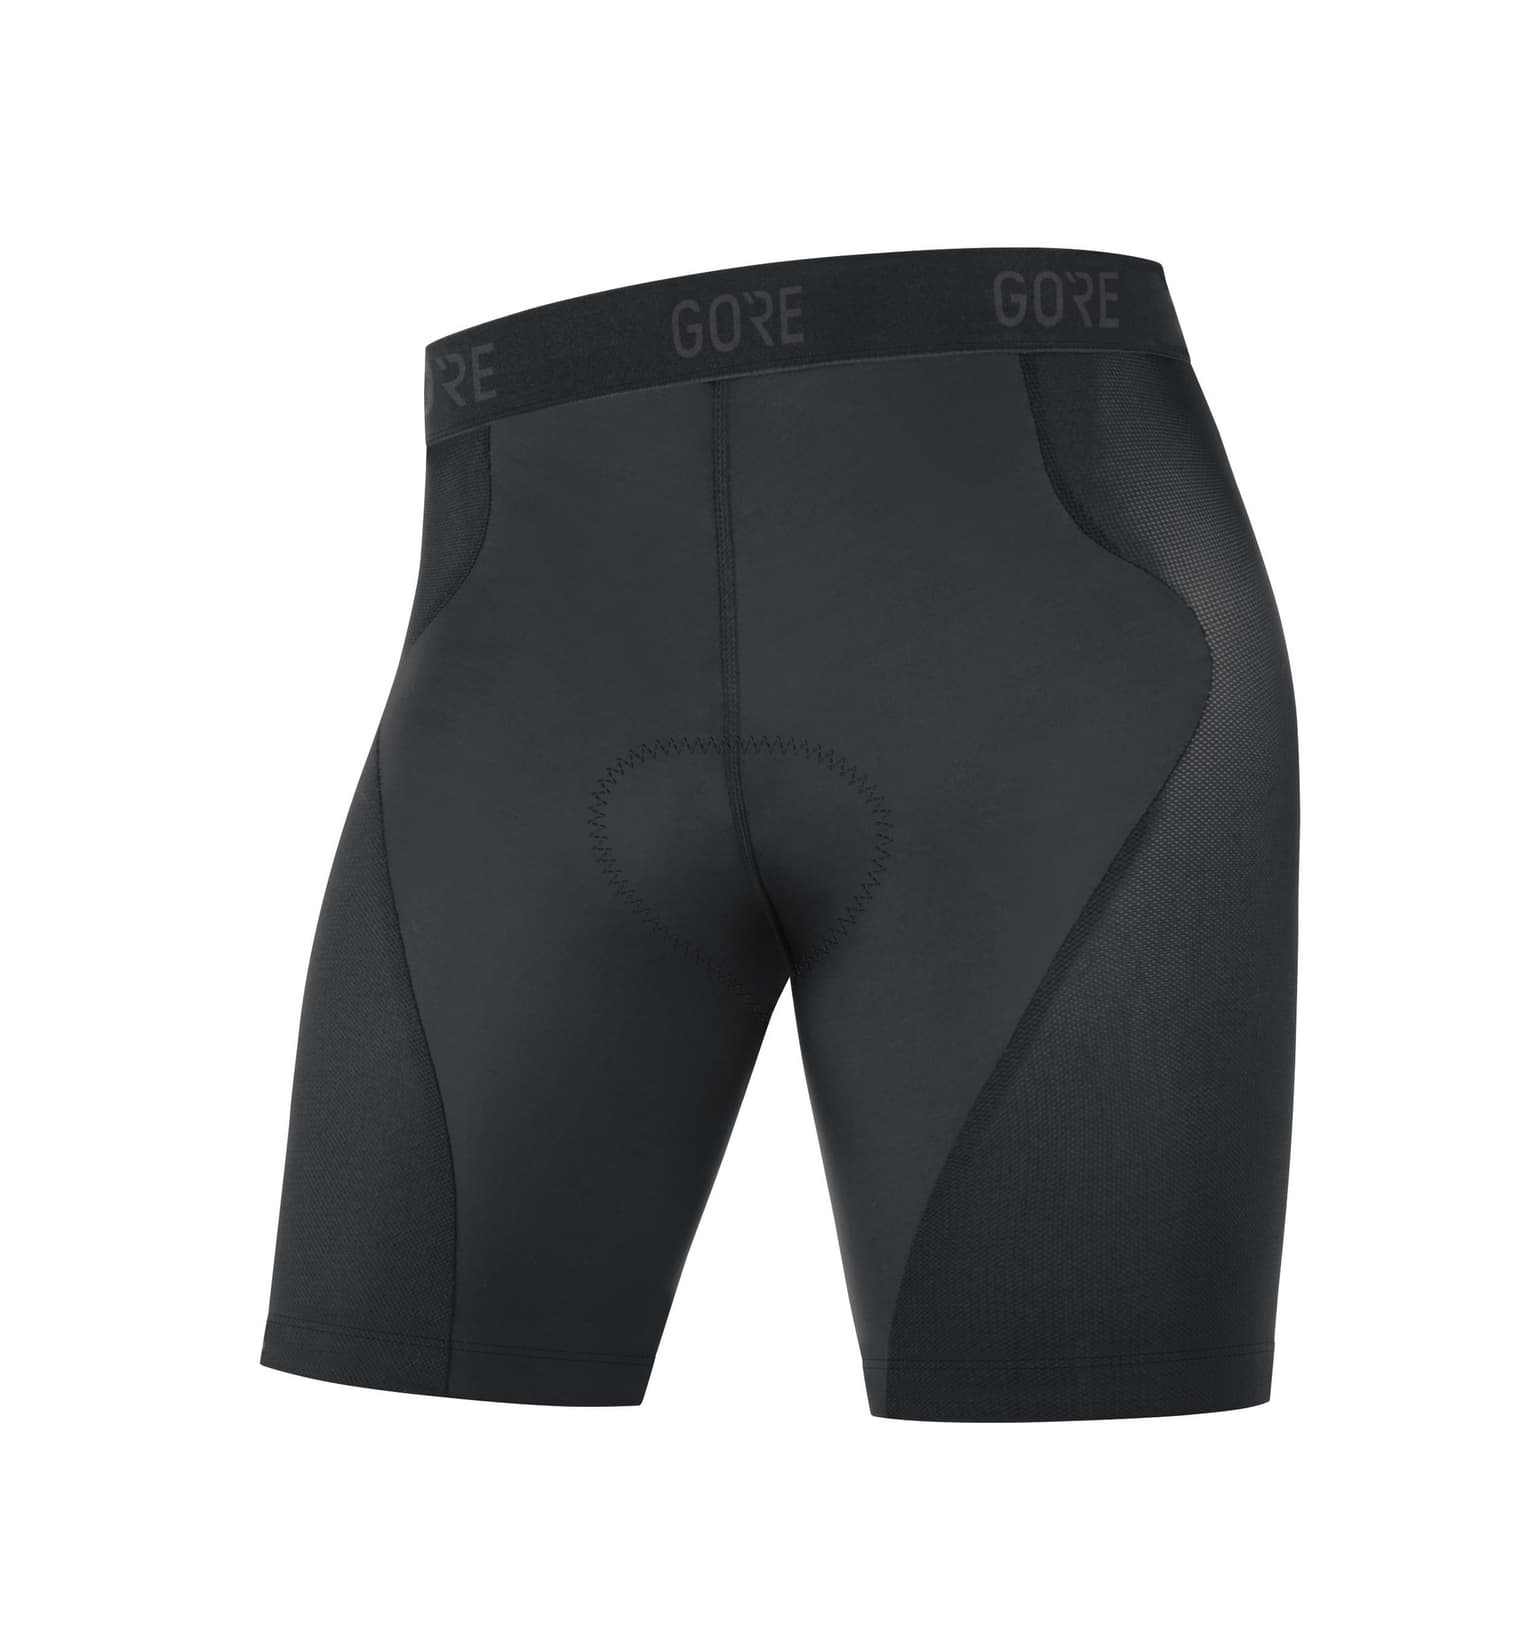 Gore Gore GORE® C5 Kurze Unterziehtights+ Pantaloni da ciclismo nero 1